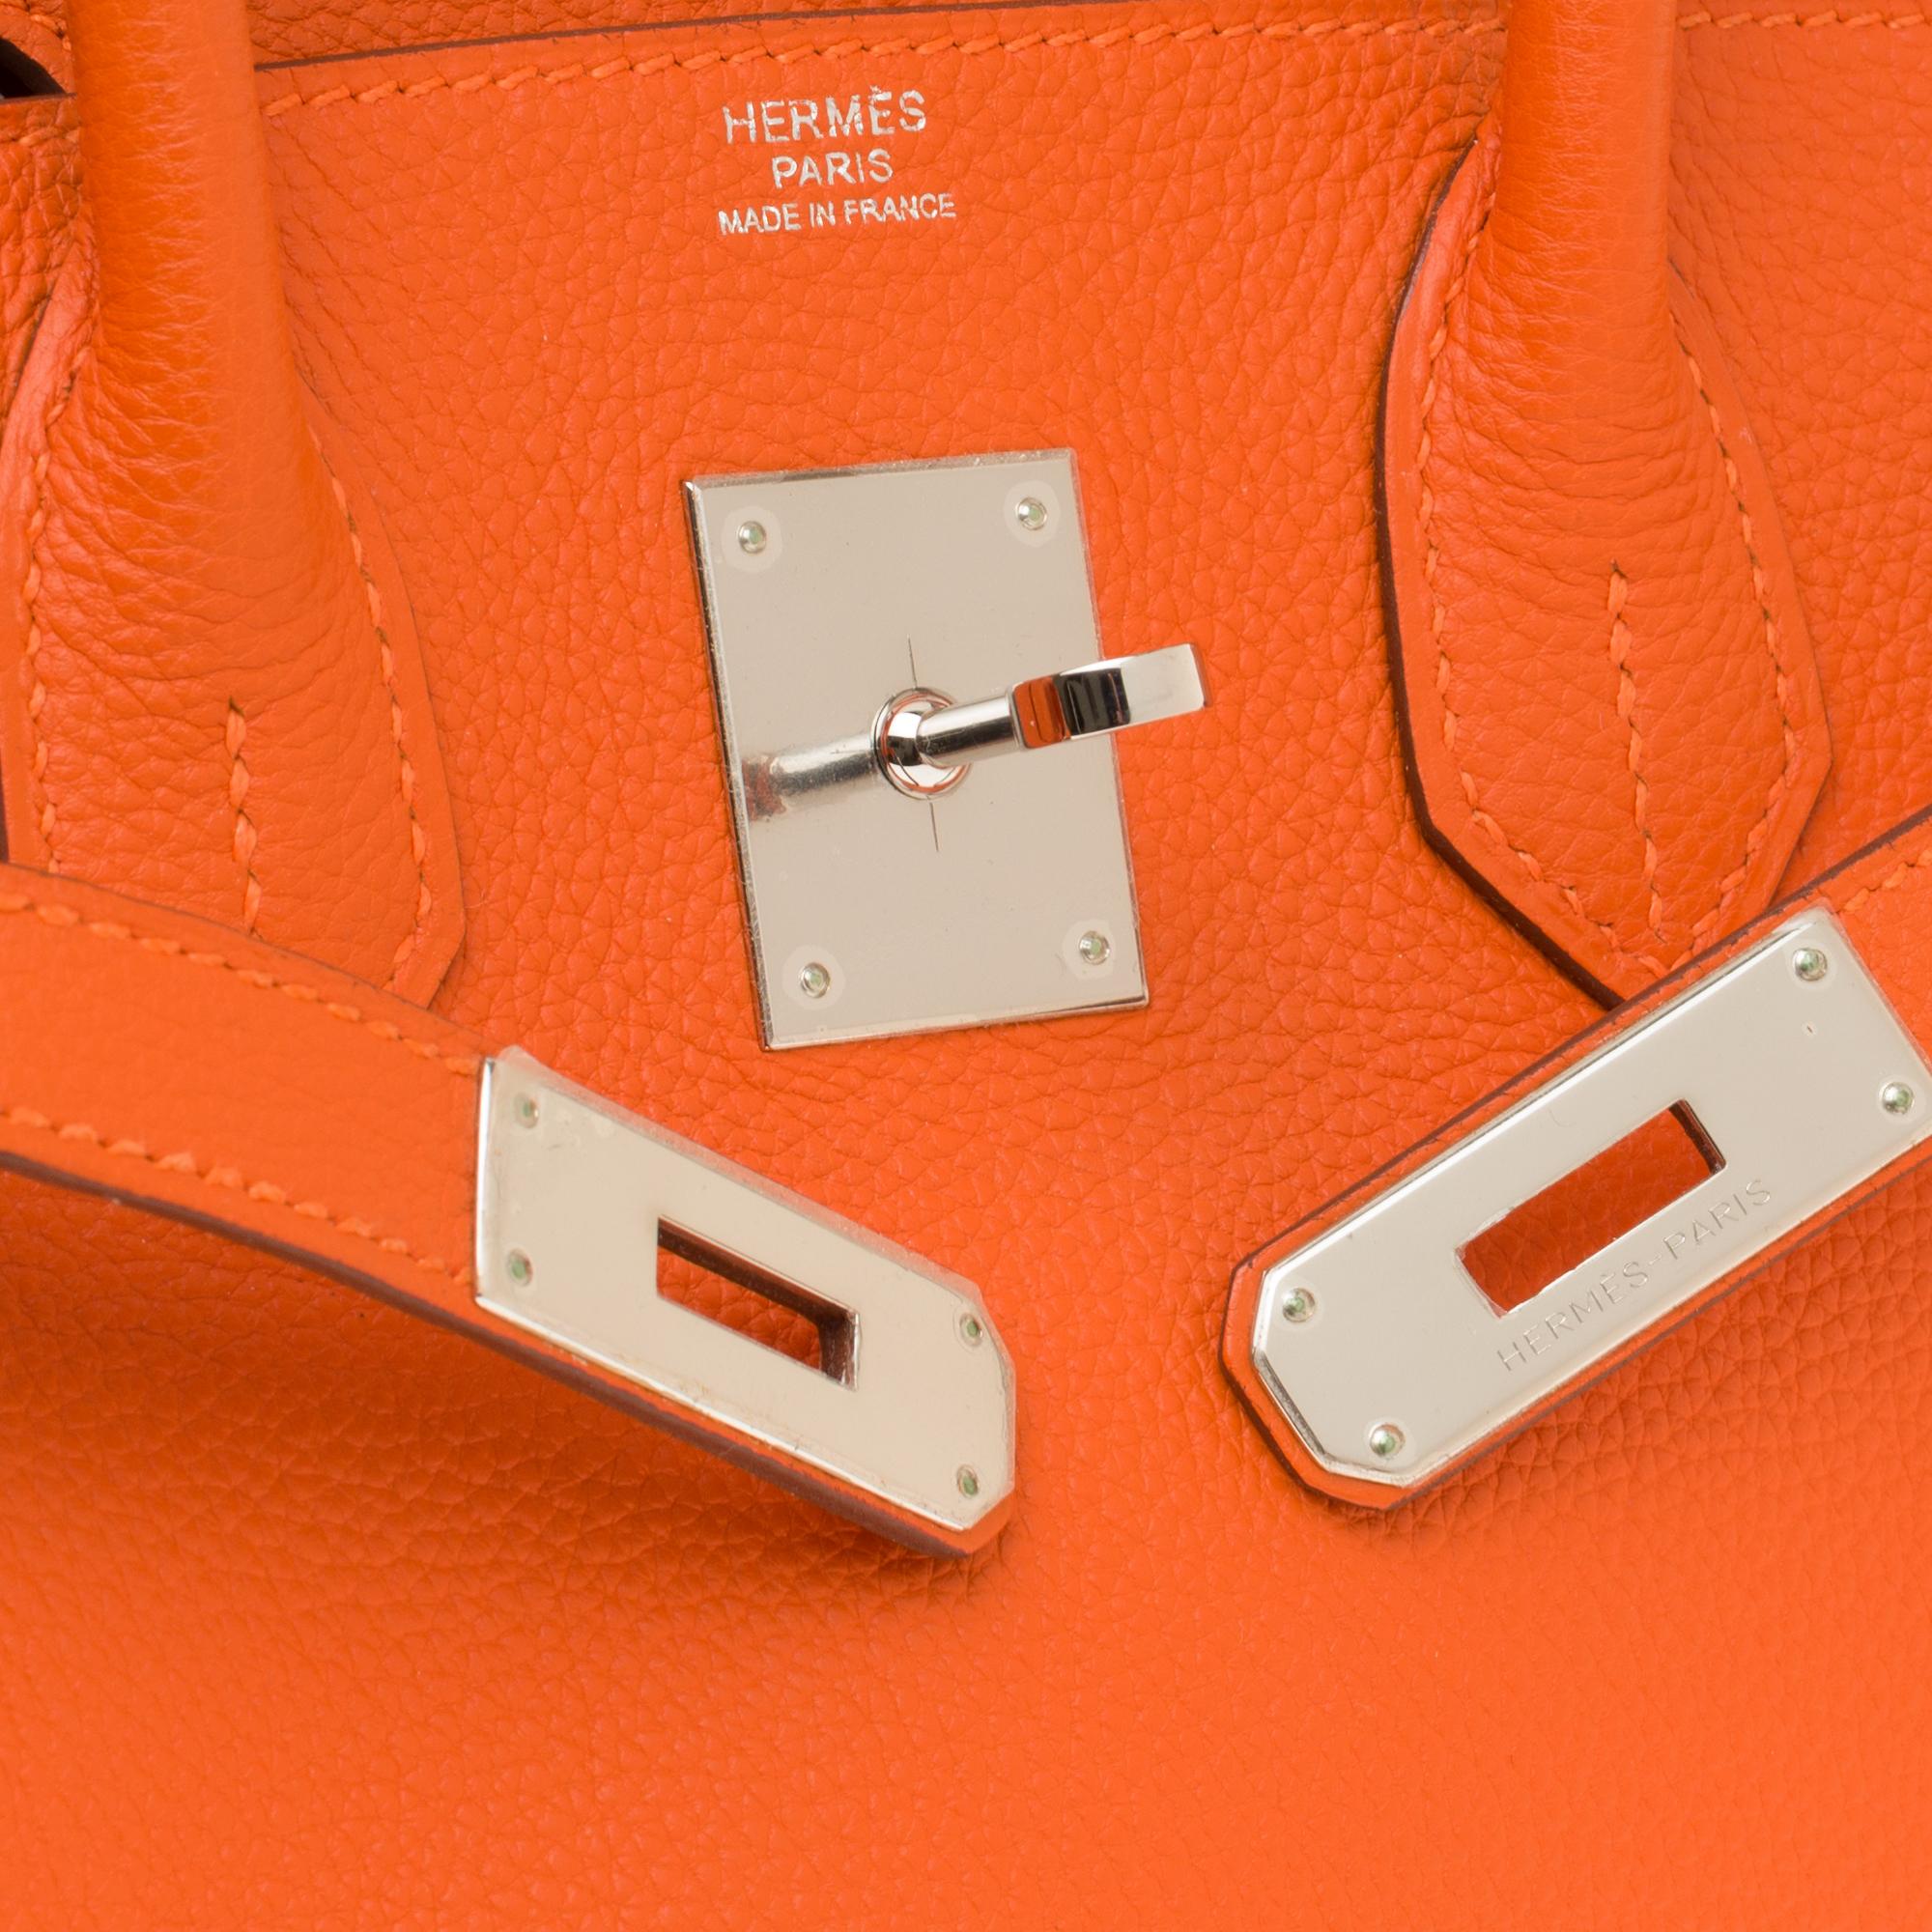 Women's Hermès Birkin 30 handbag in Togo orange leather, PHW, new condition 